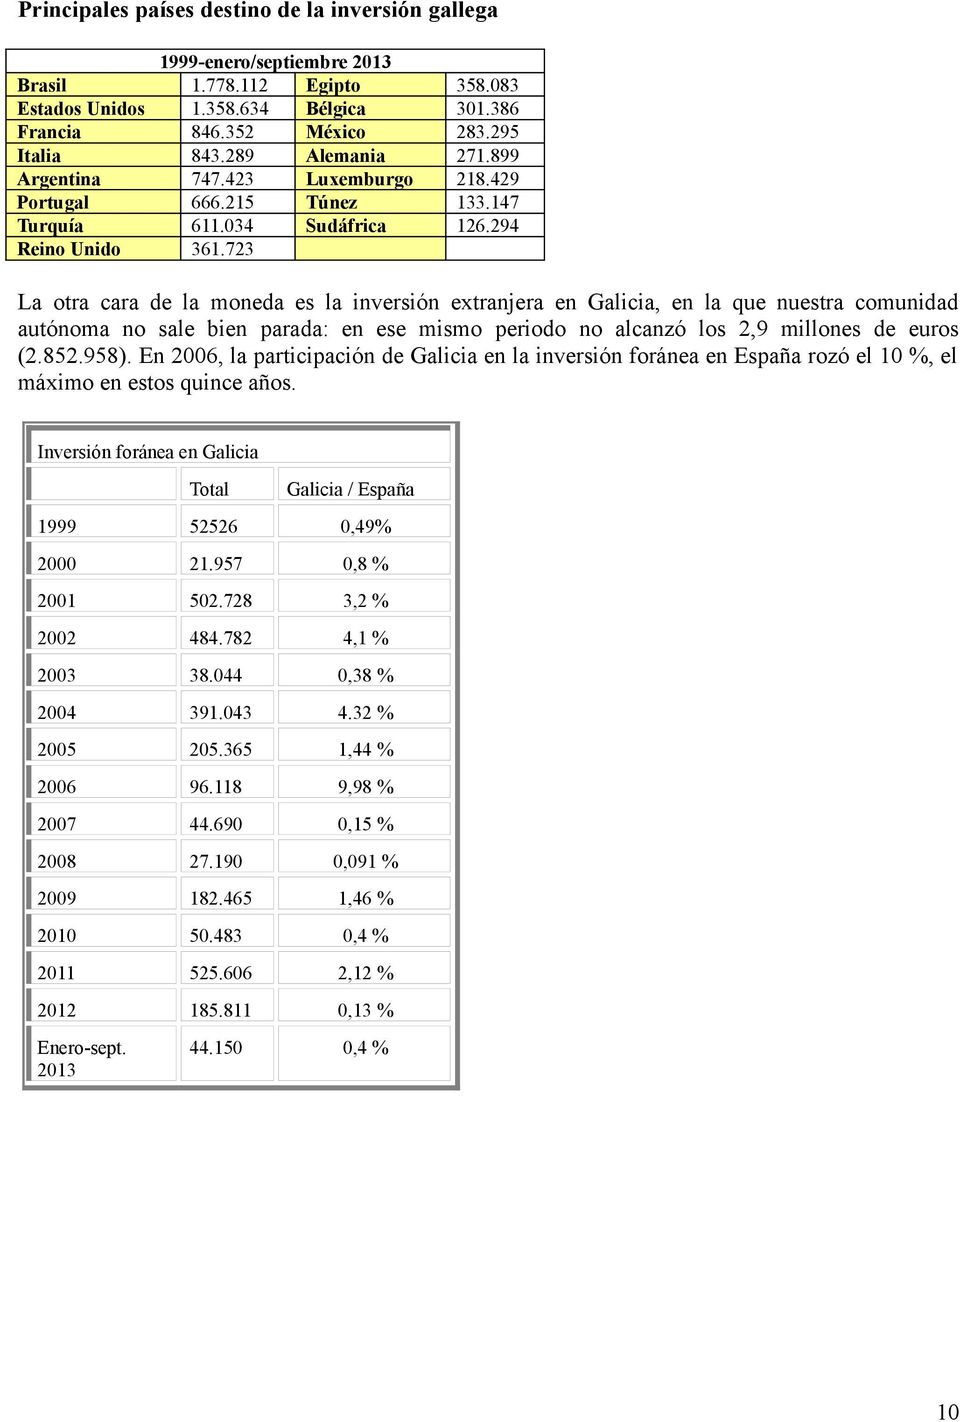 723 La otra cara de la moneda es la inversión extranjera en Galicia, en la que nuestra comunidad autónoma no sale bien parada: en ese mismo periodo no alcanzó los 2,9 millones de euros (2.852.958).